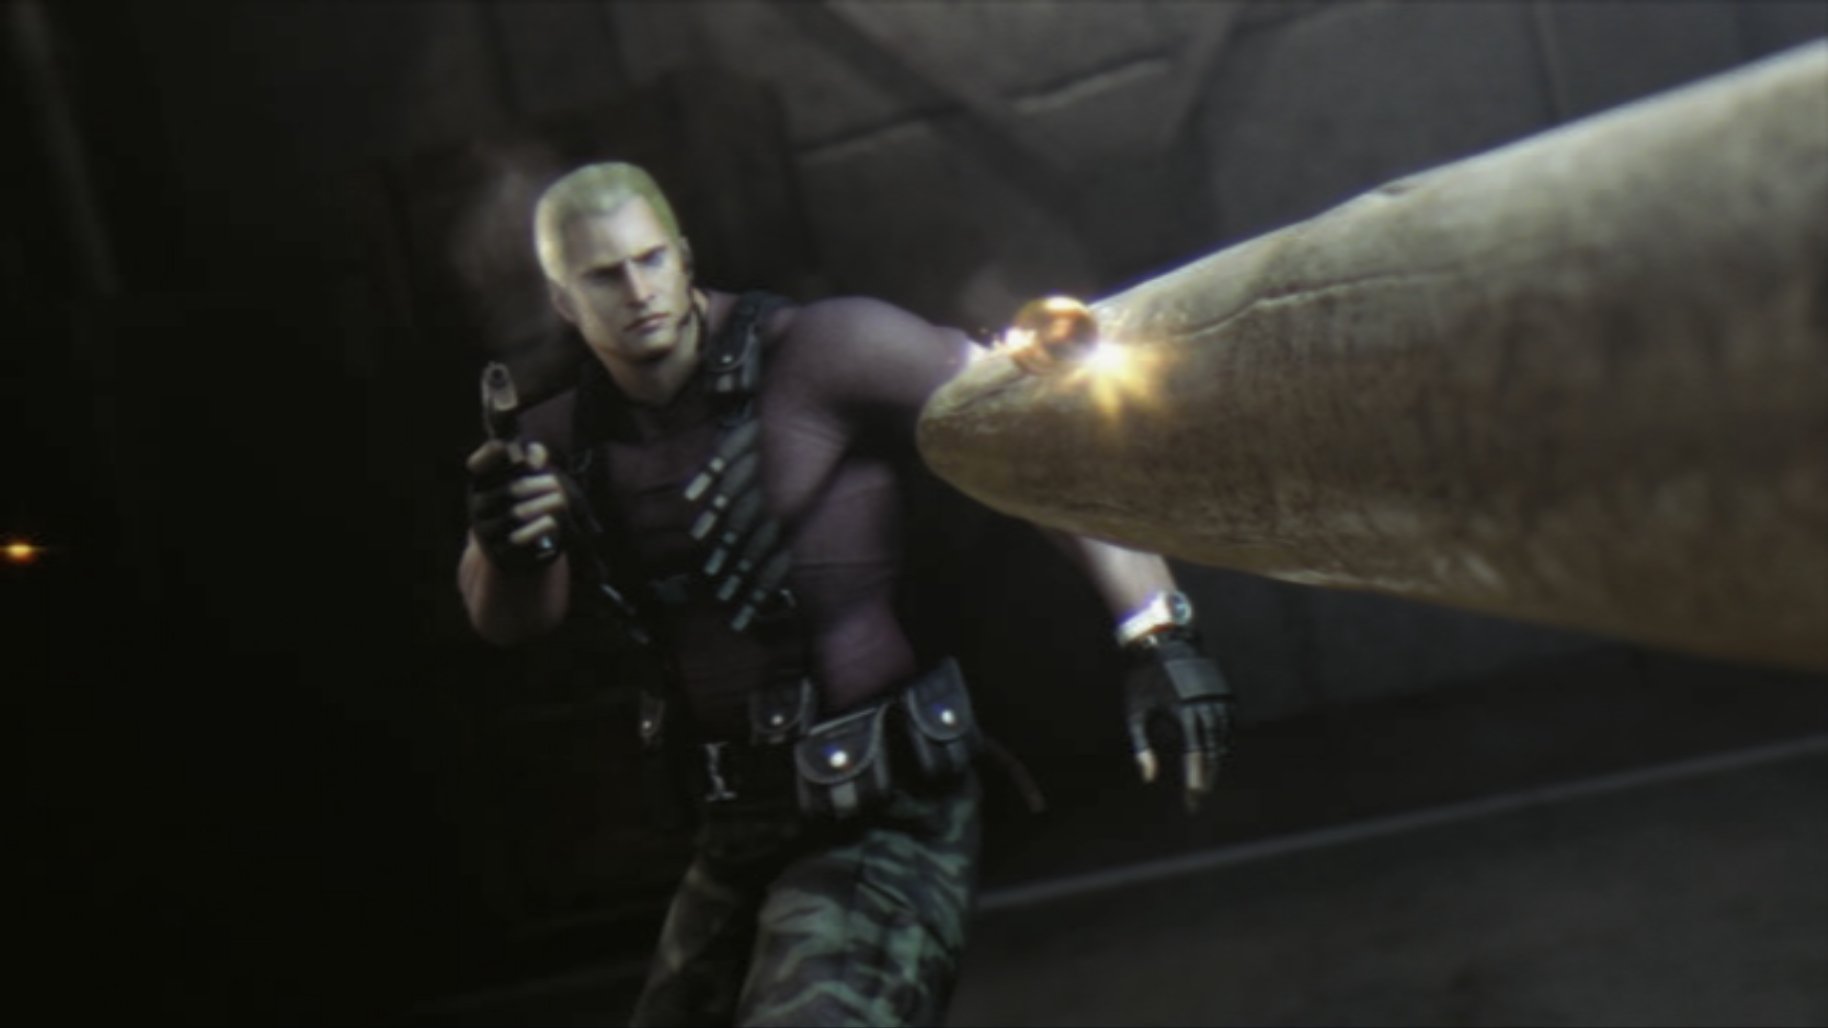 Resident Evil 4 - Krauser vs Wesker ( Mod Showcase ) 